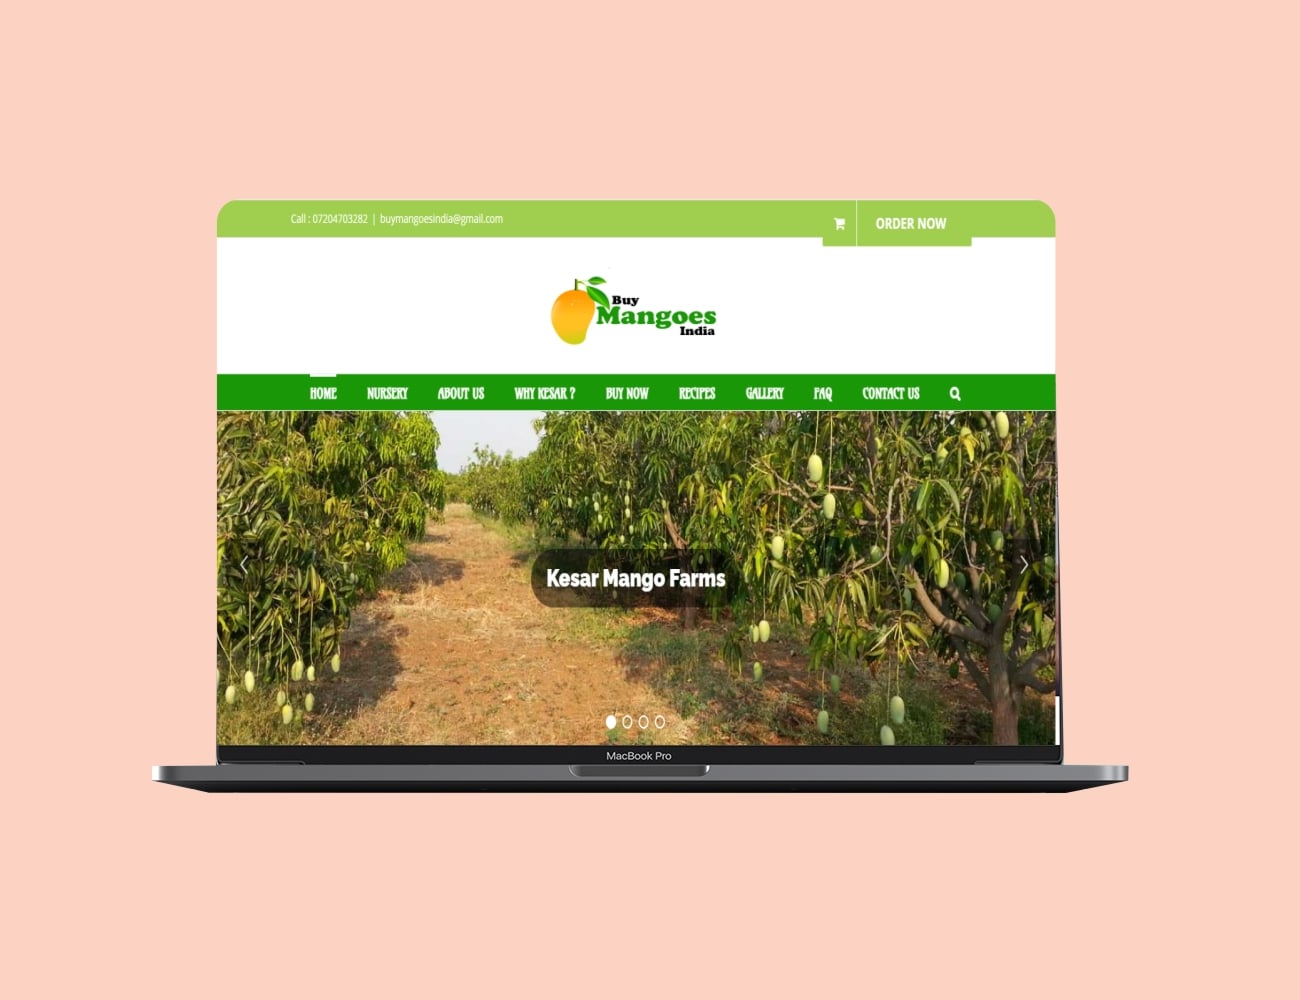 Web design case study - Buy Mangoes India